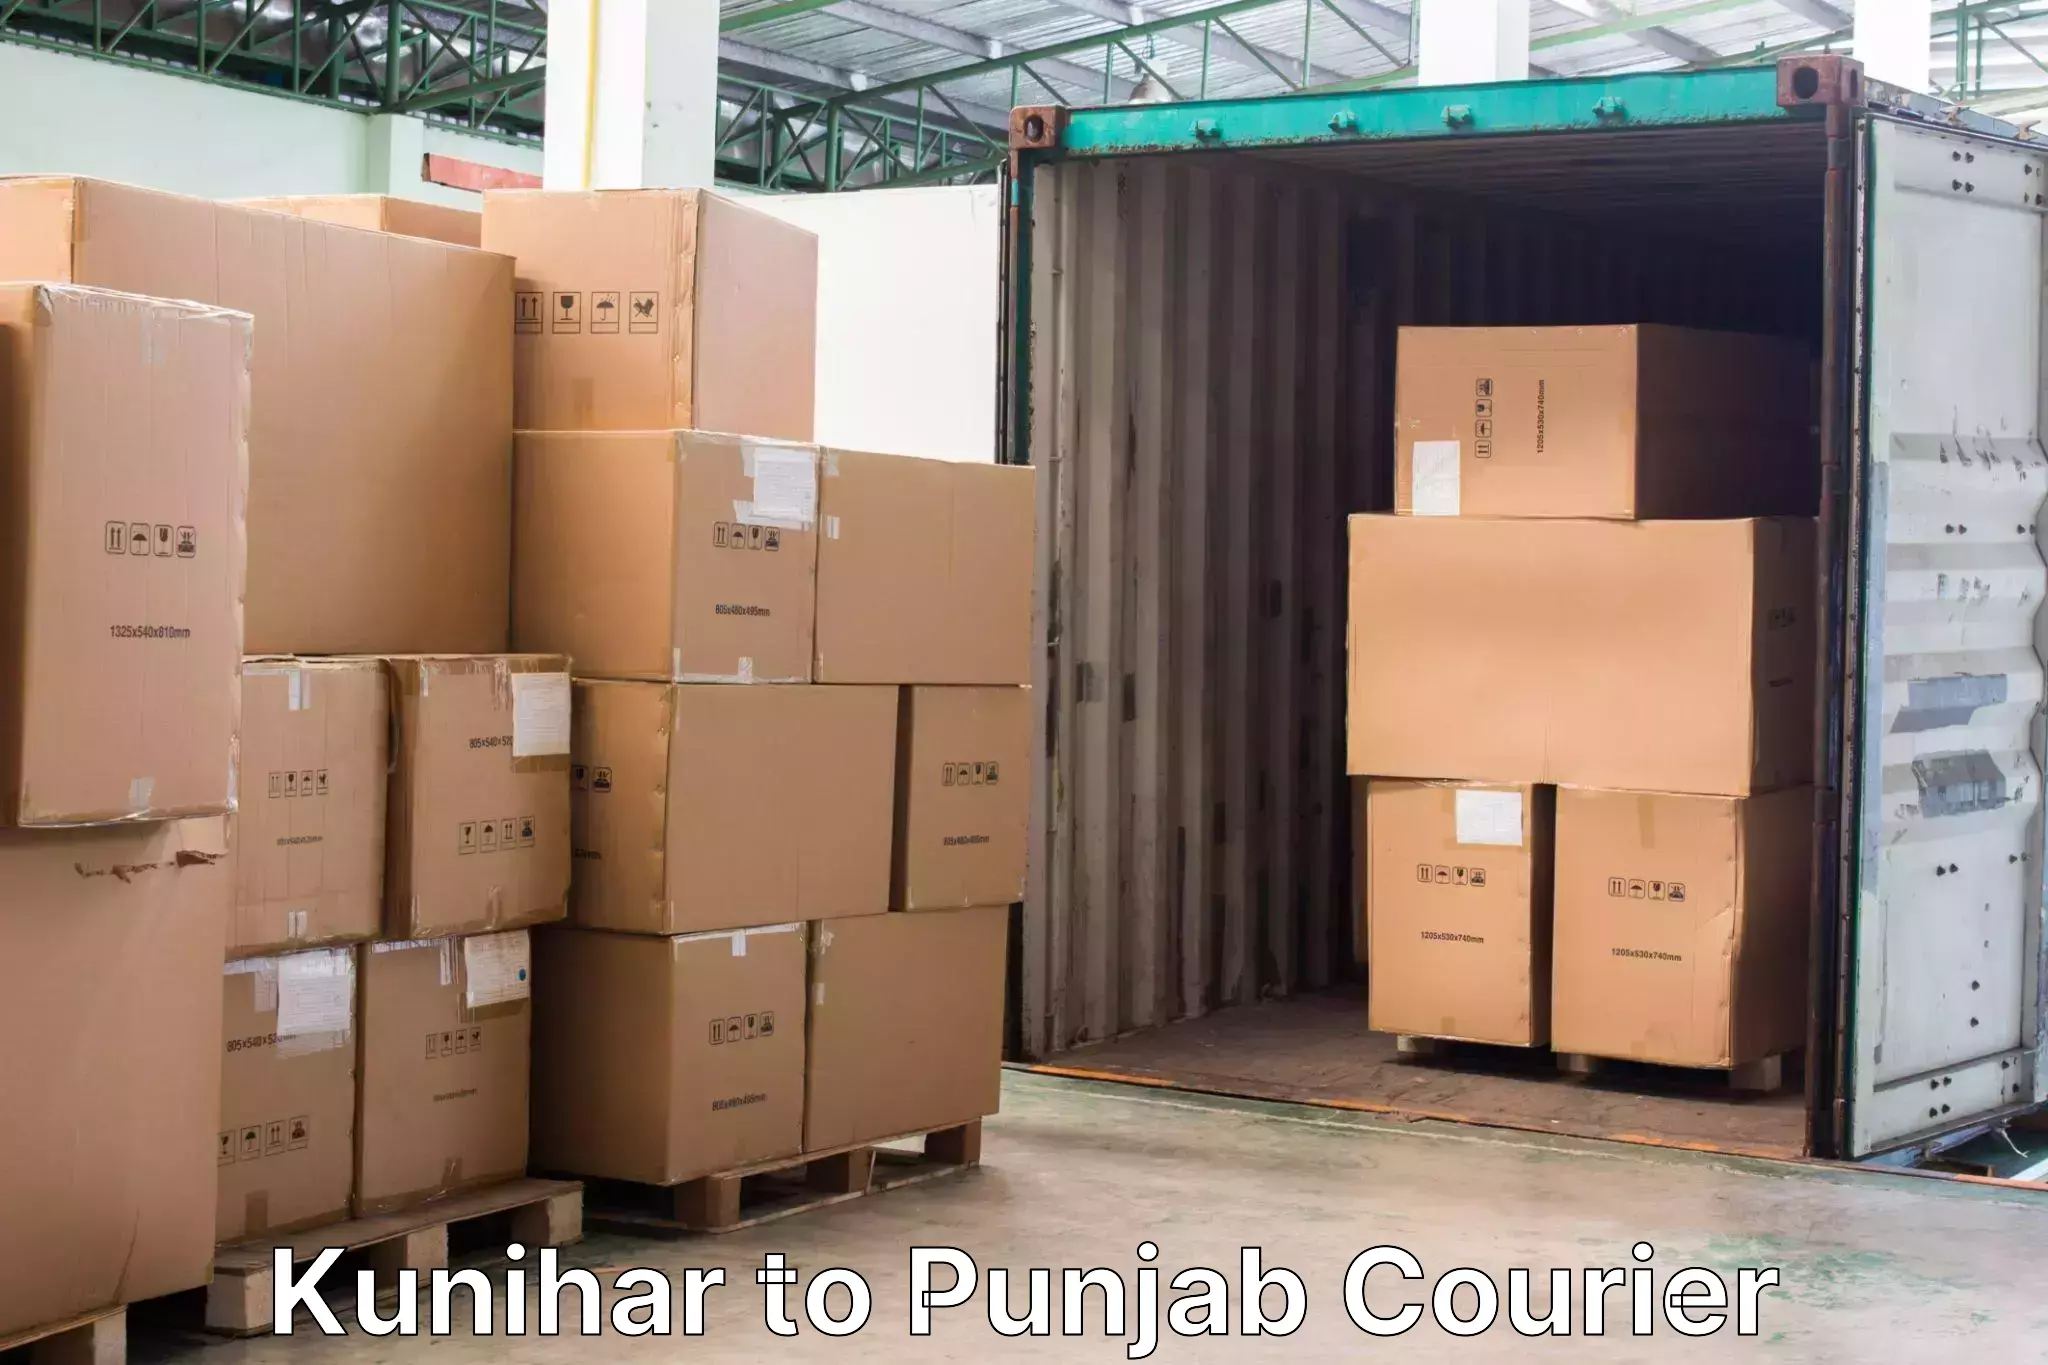 Baggage shipping experience Kunihar to Dinanagar